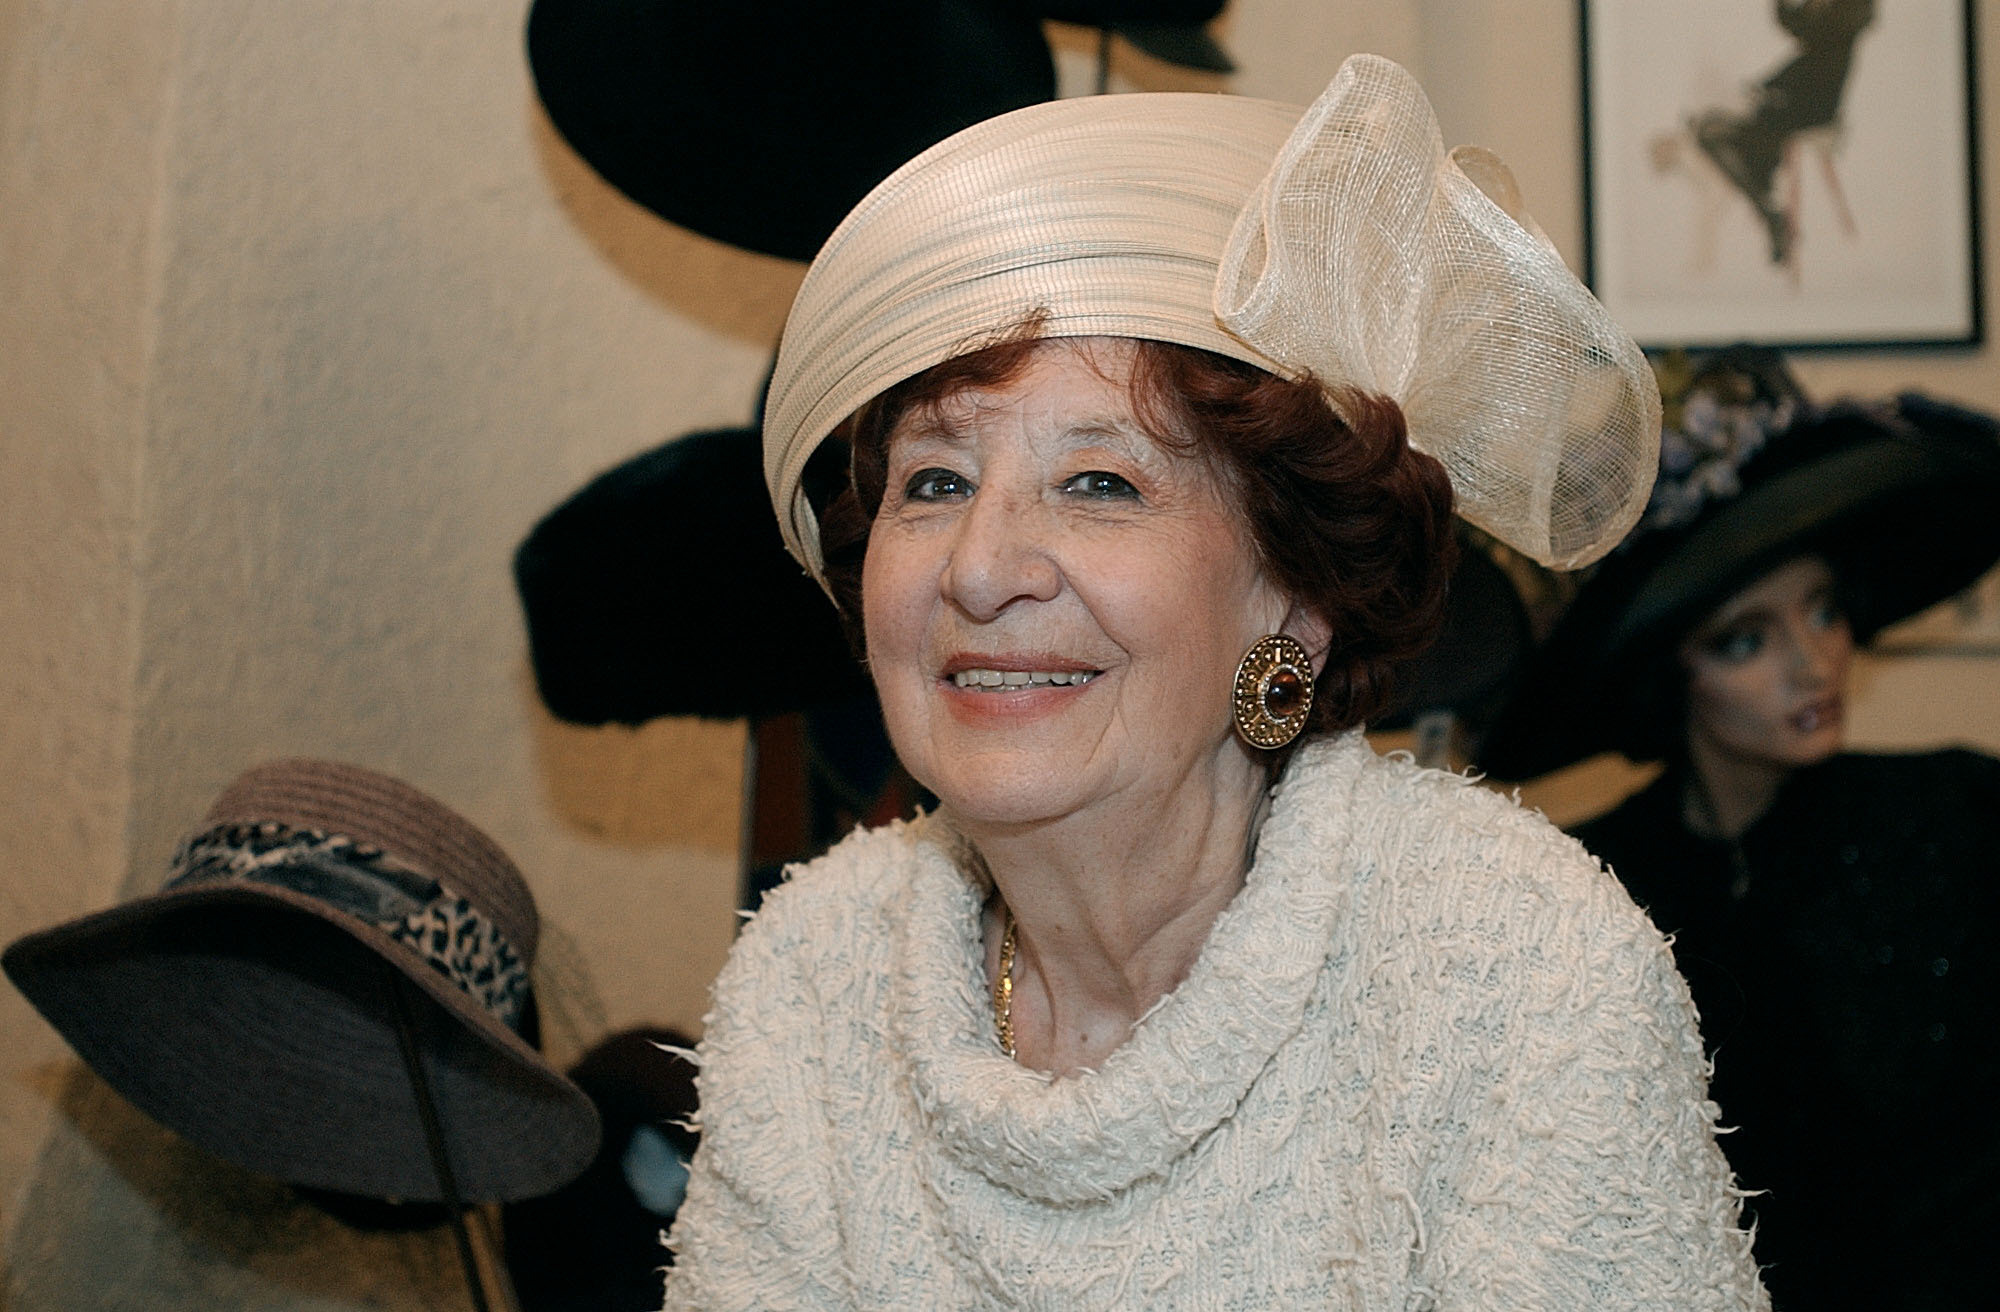 La modiste Dolly Fankhauser, sur un cliché qu'elle affectionne tout particulièrement, pris en 2007 à l'occasion des 50 ans de sa boutique.